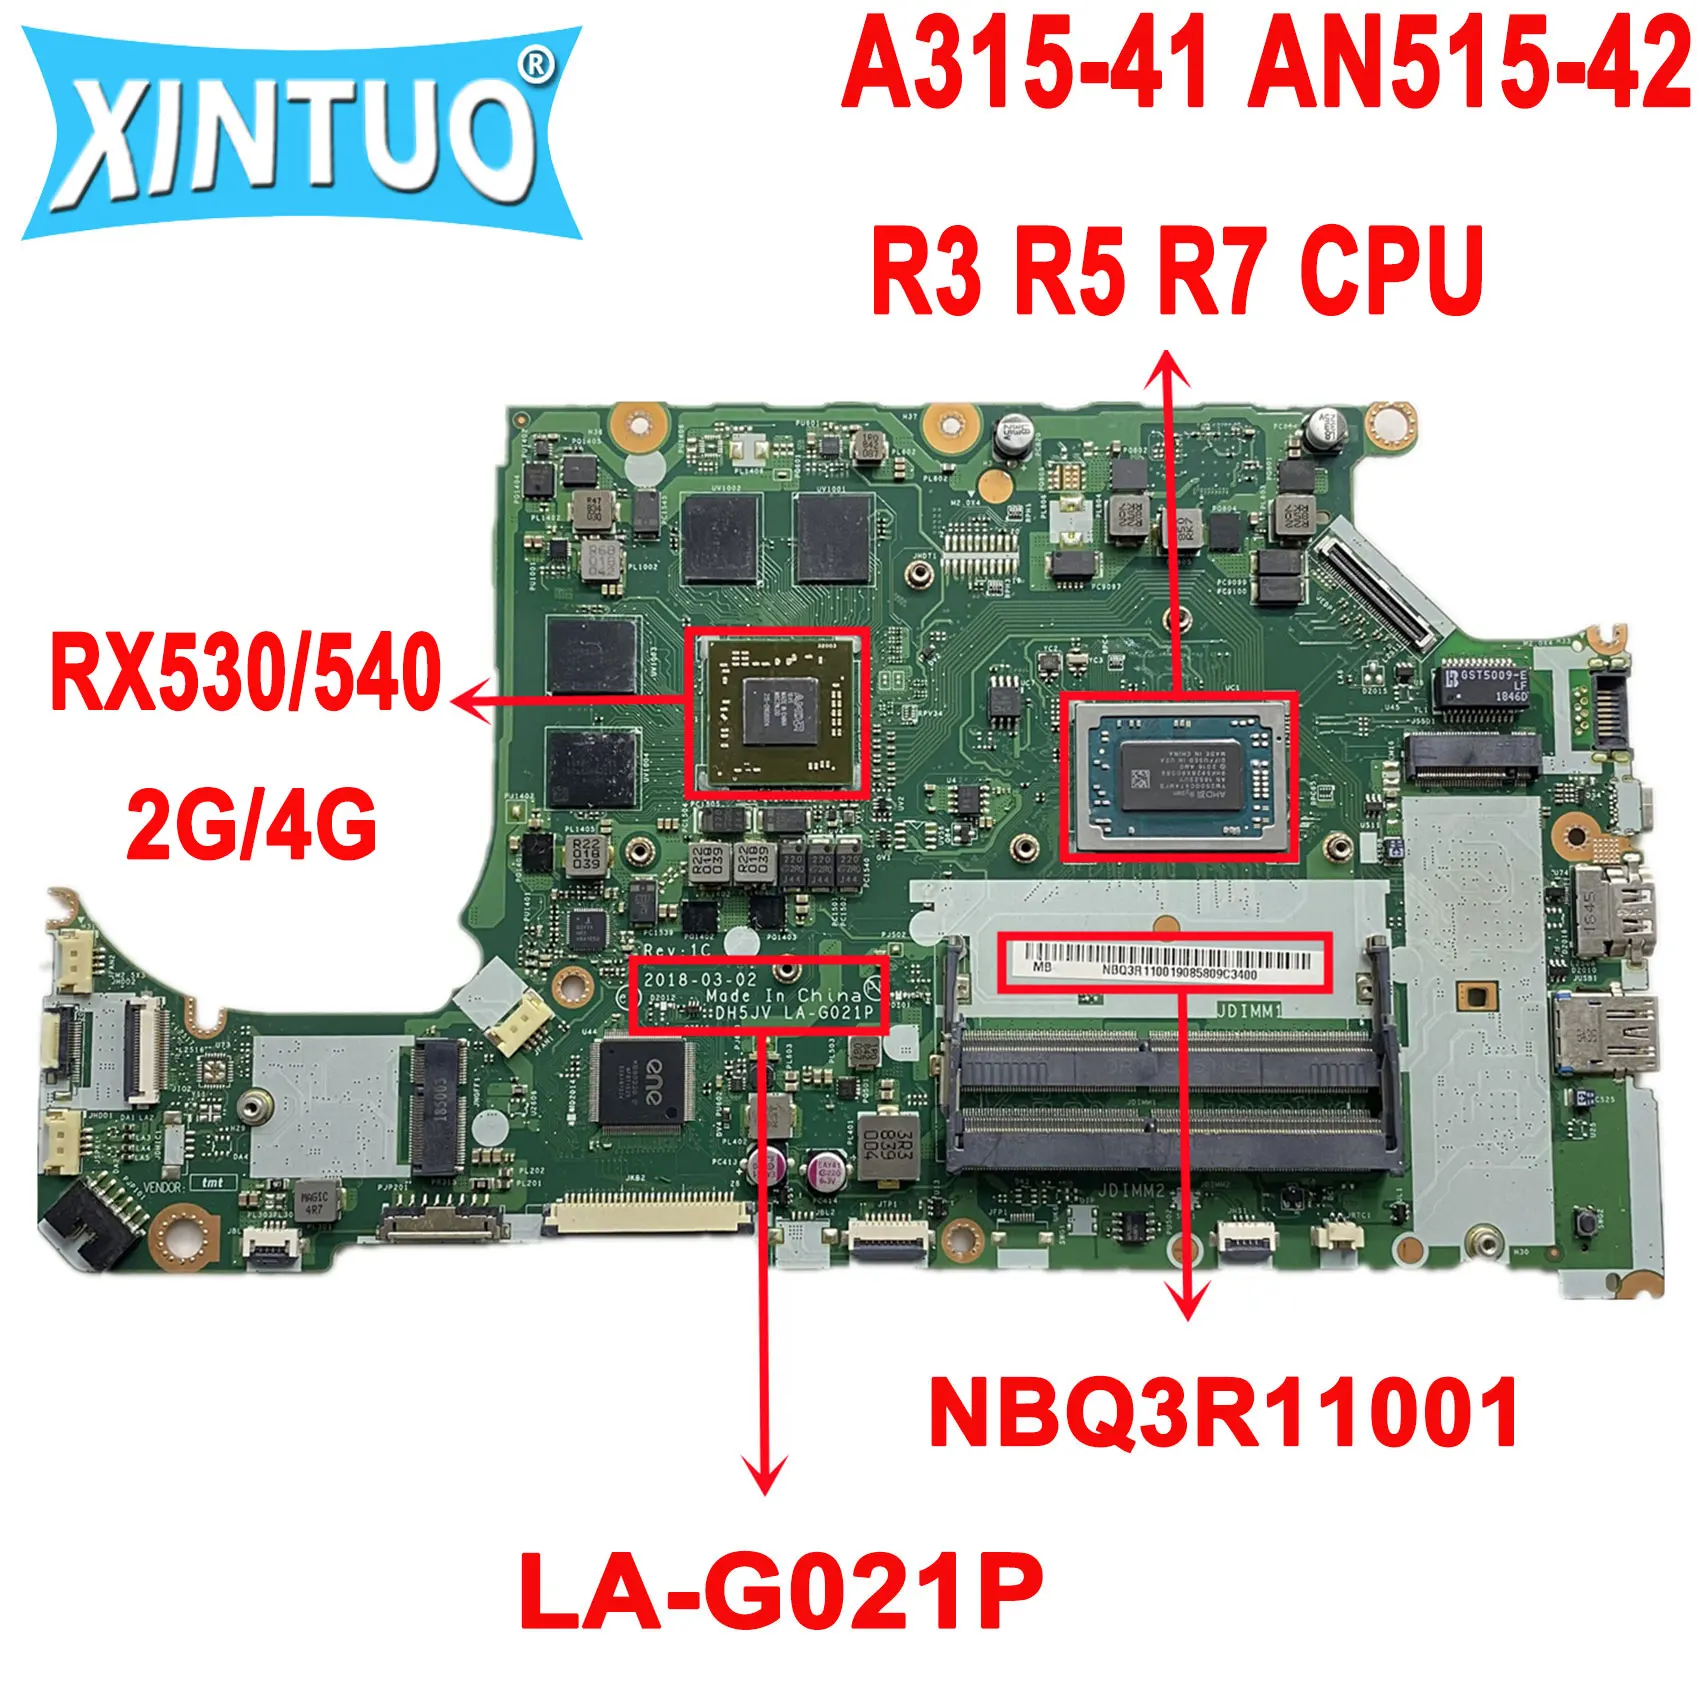 

NBQ3R11001 DH5JV LA-G021P for Acer ASPIRE A315-41 AN515-42 Laptop Motherboard with Ryzen R3 R5 R7 CPU RX530/540 GPU DDR4 Tested